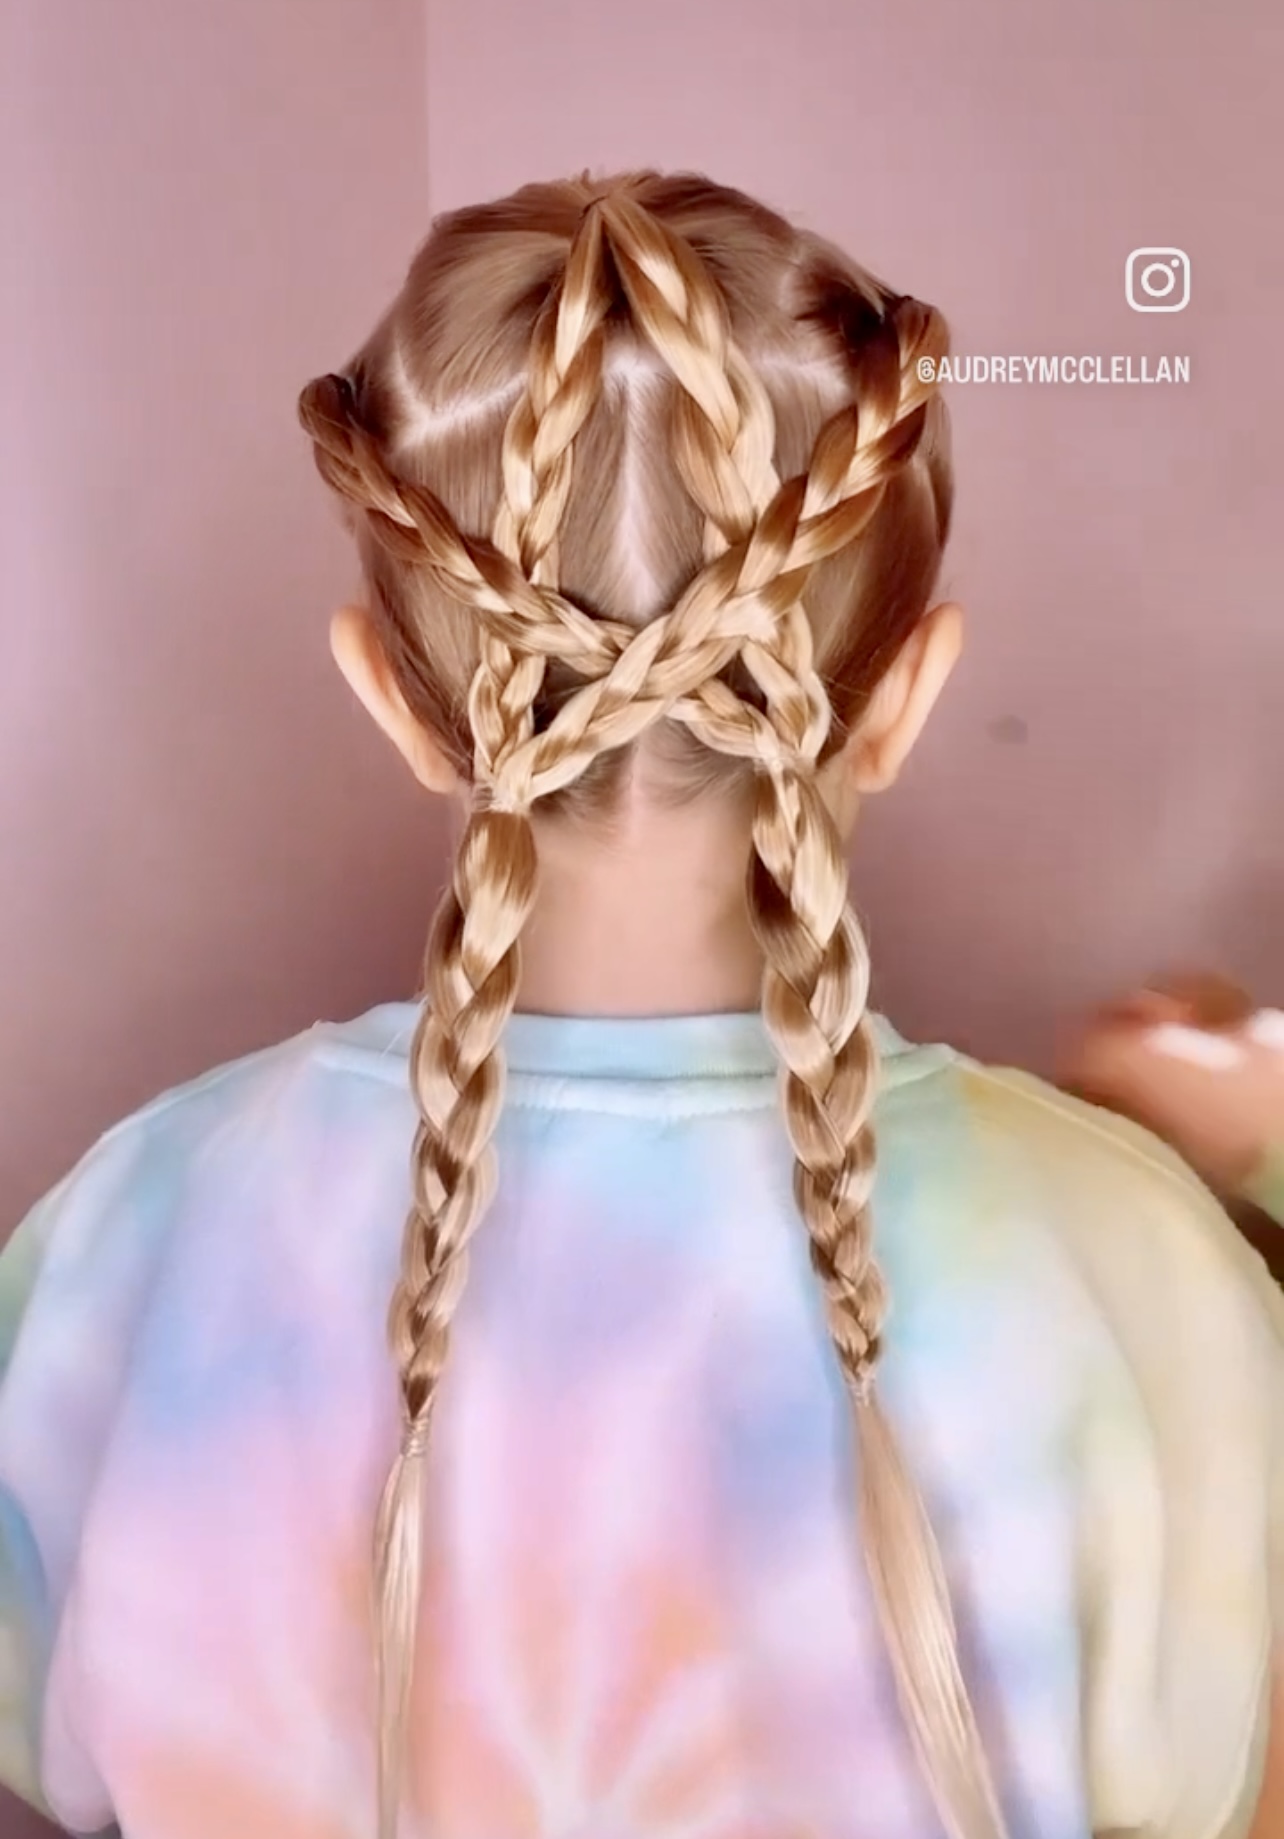 essence. Украшения для волос -Star hair swirls - т купить в интернет-магазине косметики.